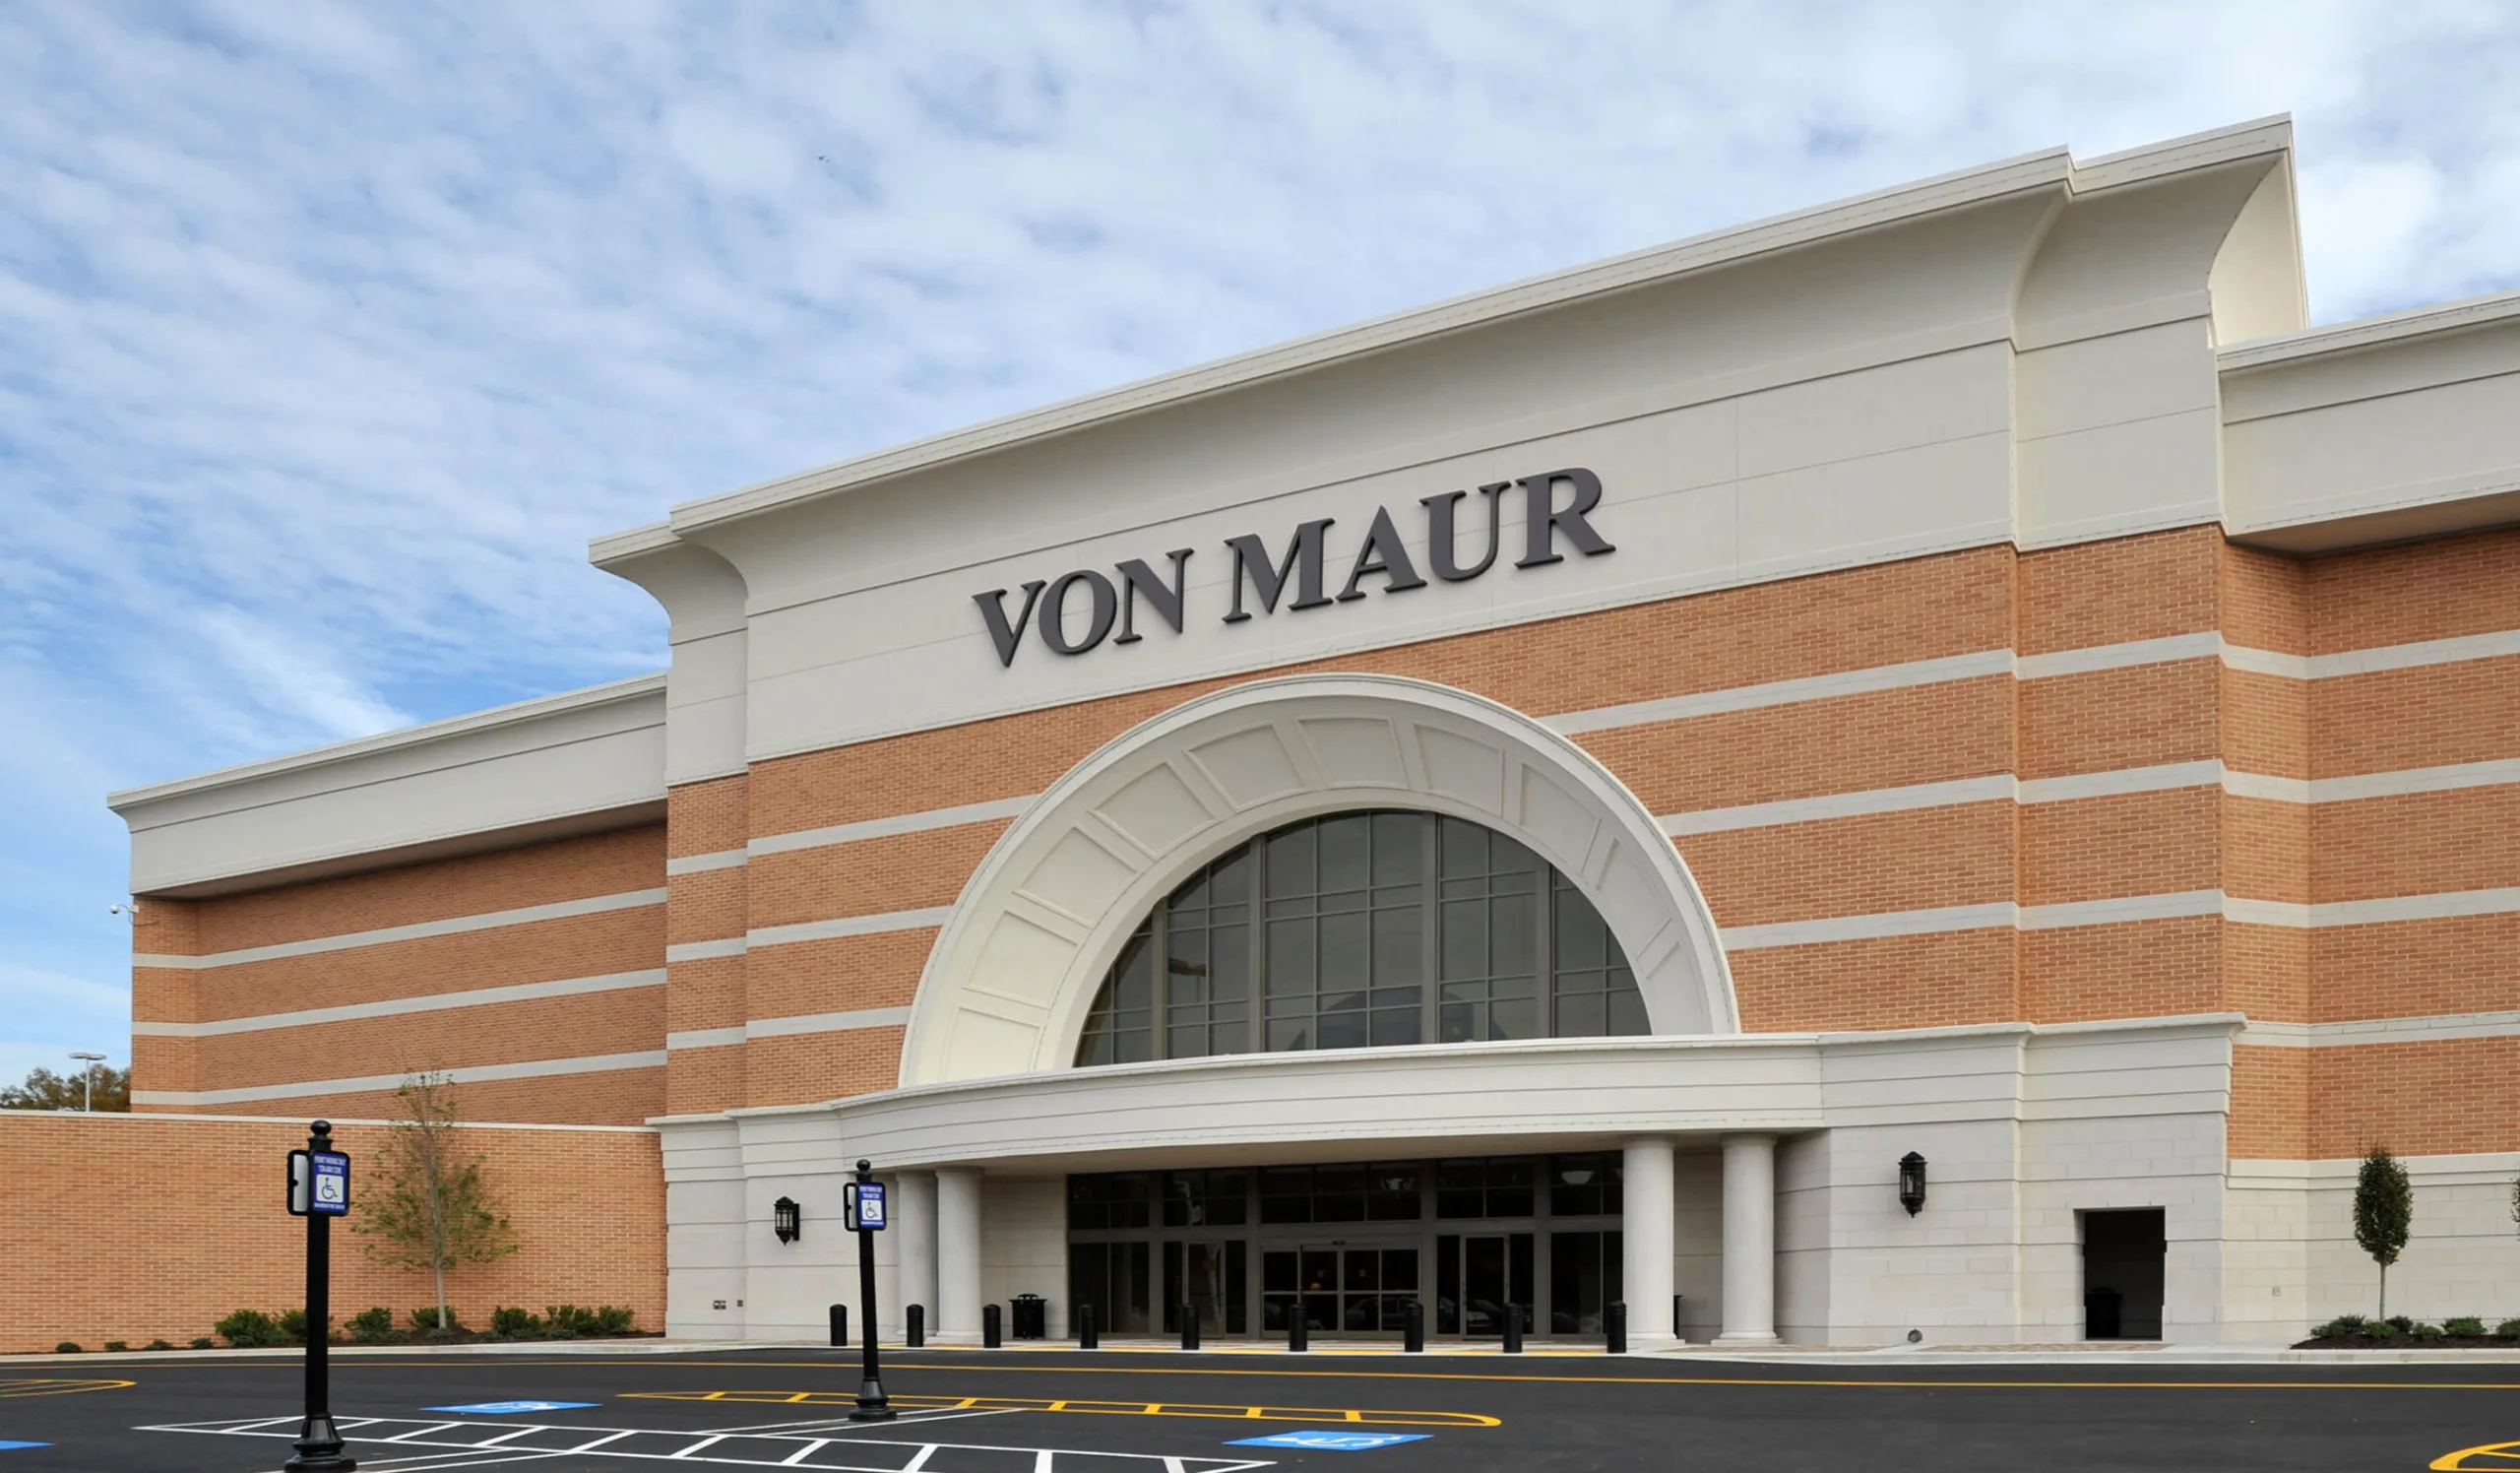 Von Maur Named 2022's No. 1 Retailer